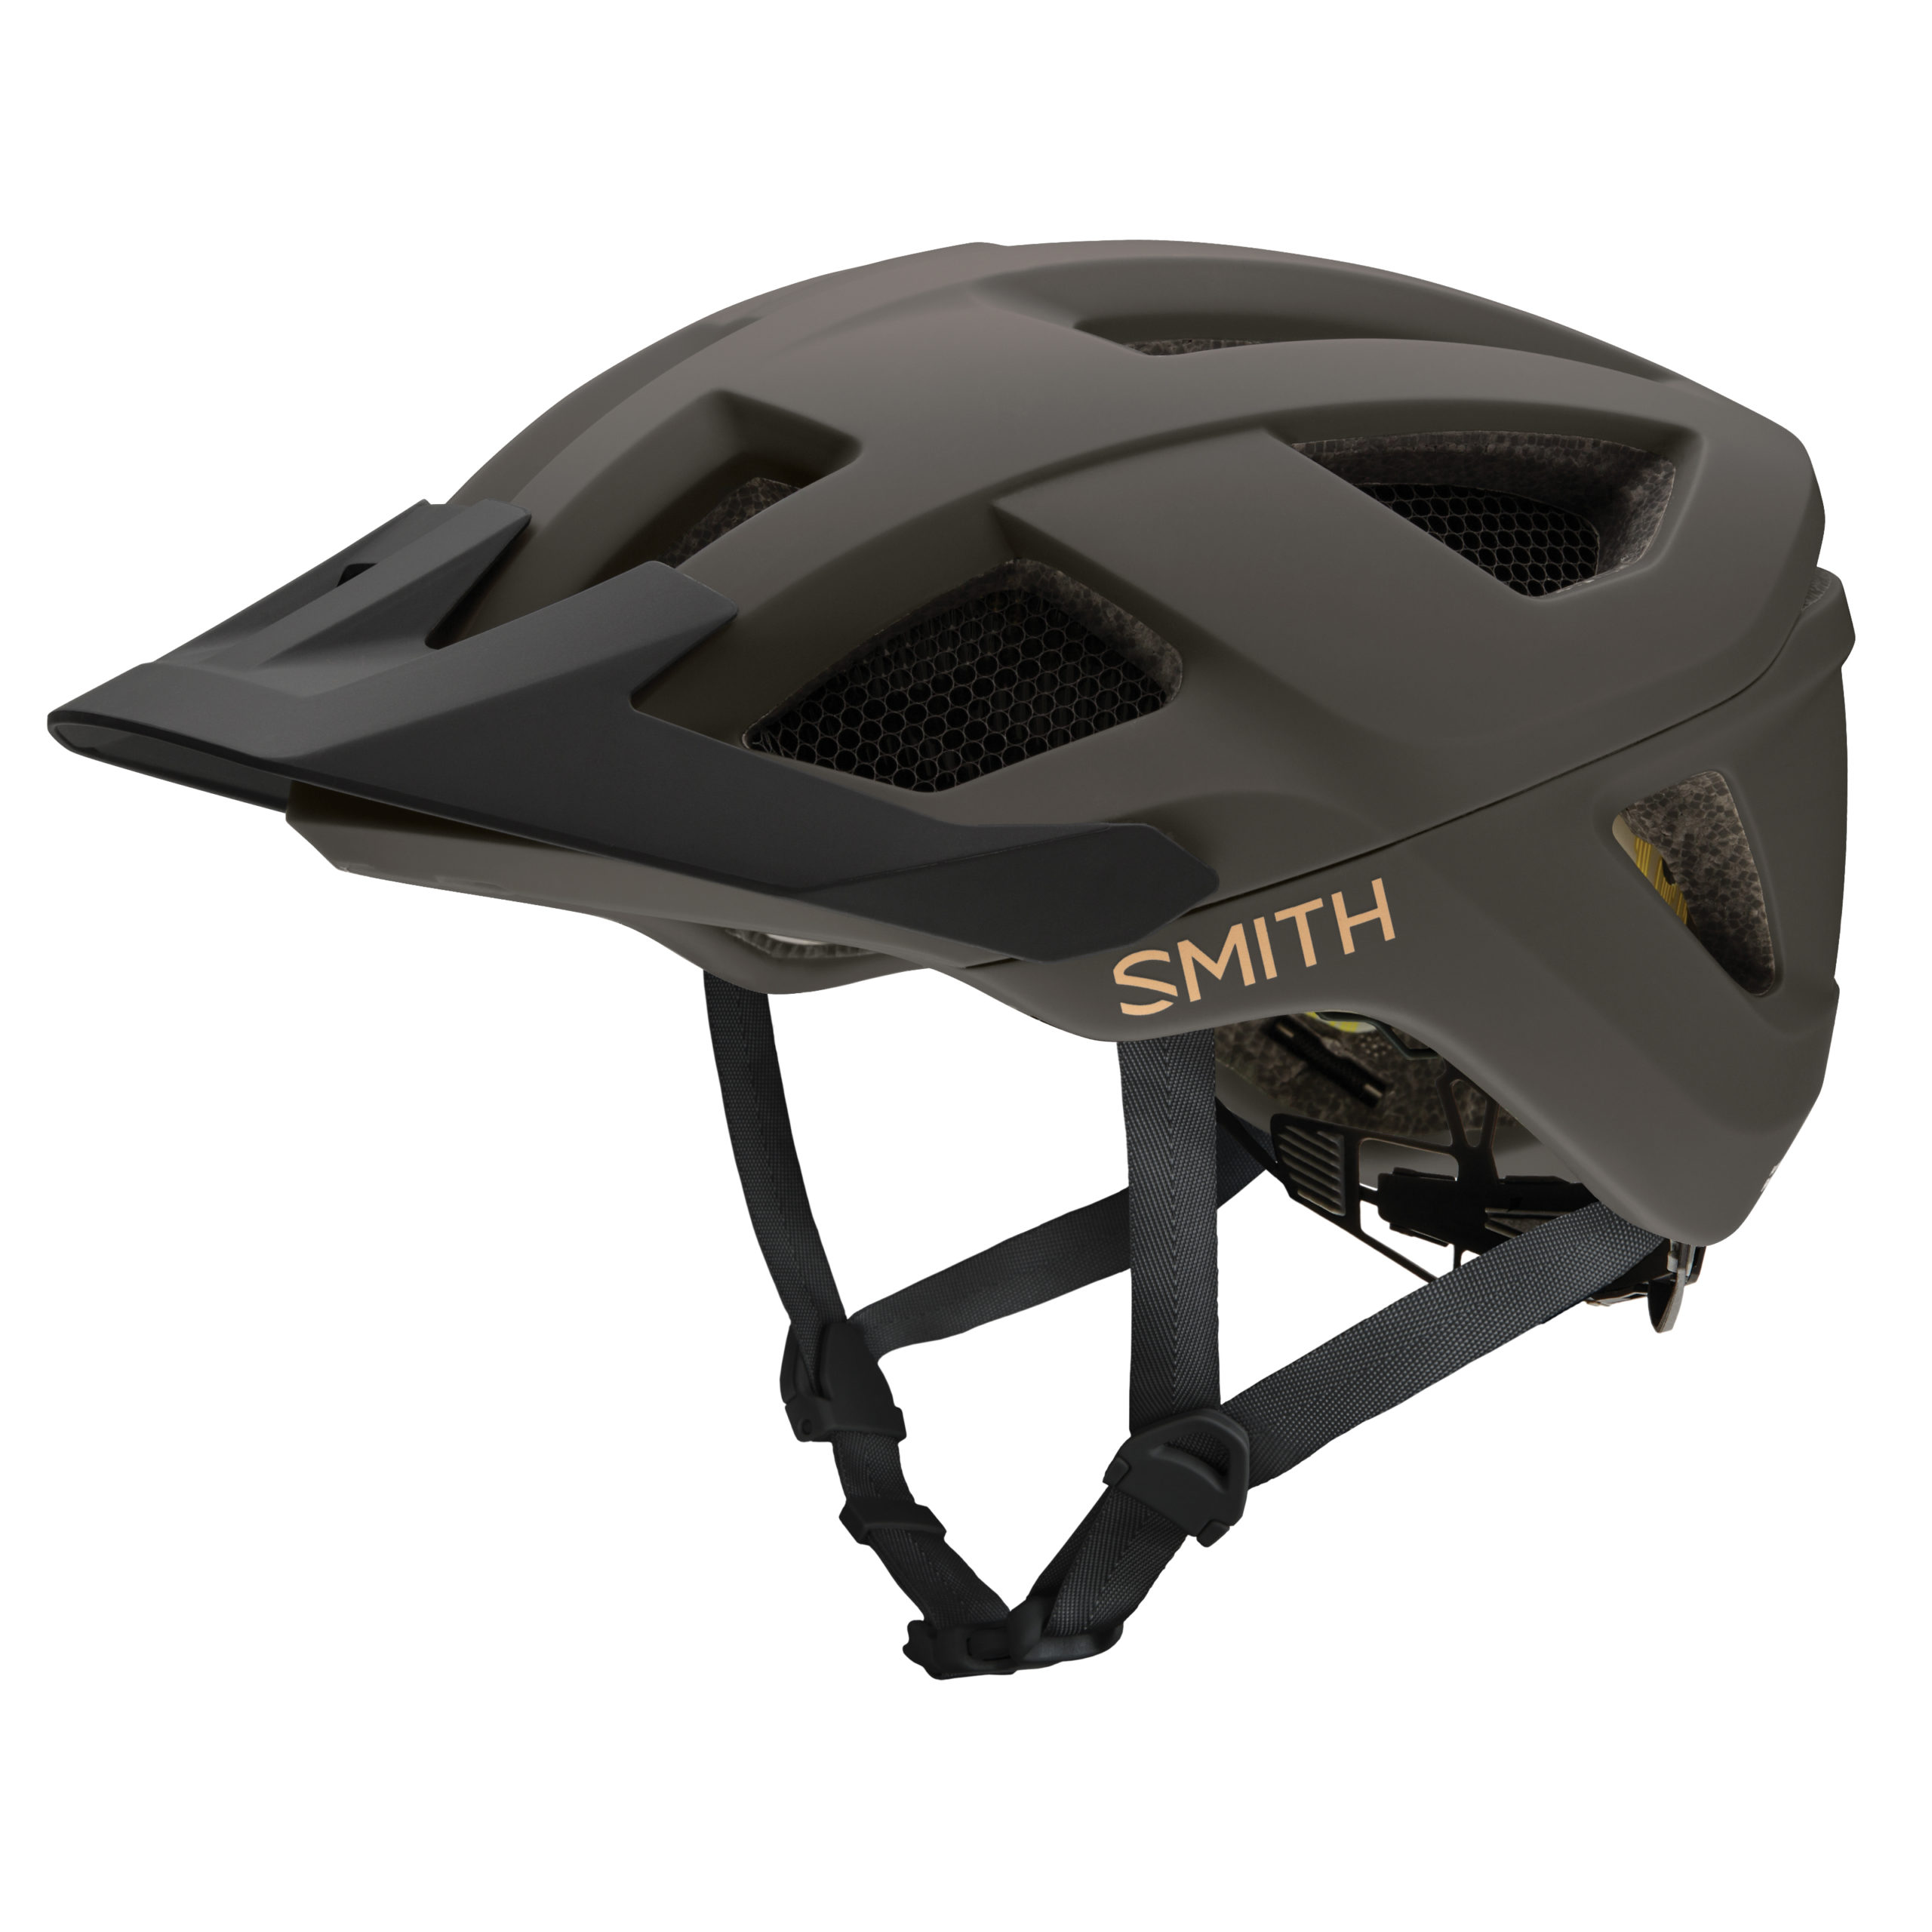 32732円 【T-ポイント5倍】 Smith Trace MIPS Road Helmet ロードサイクルヘルメット 自転車ヘルメット MTB XC BMX マウンテンバイク ロード